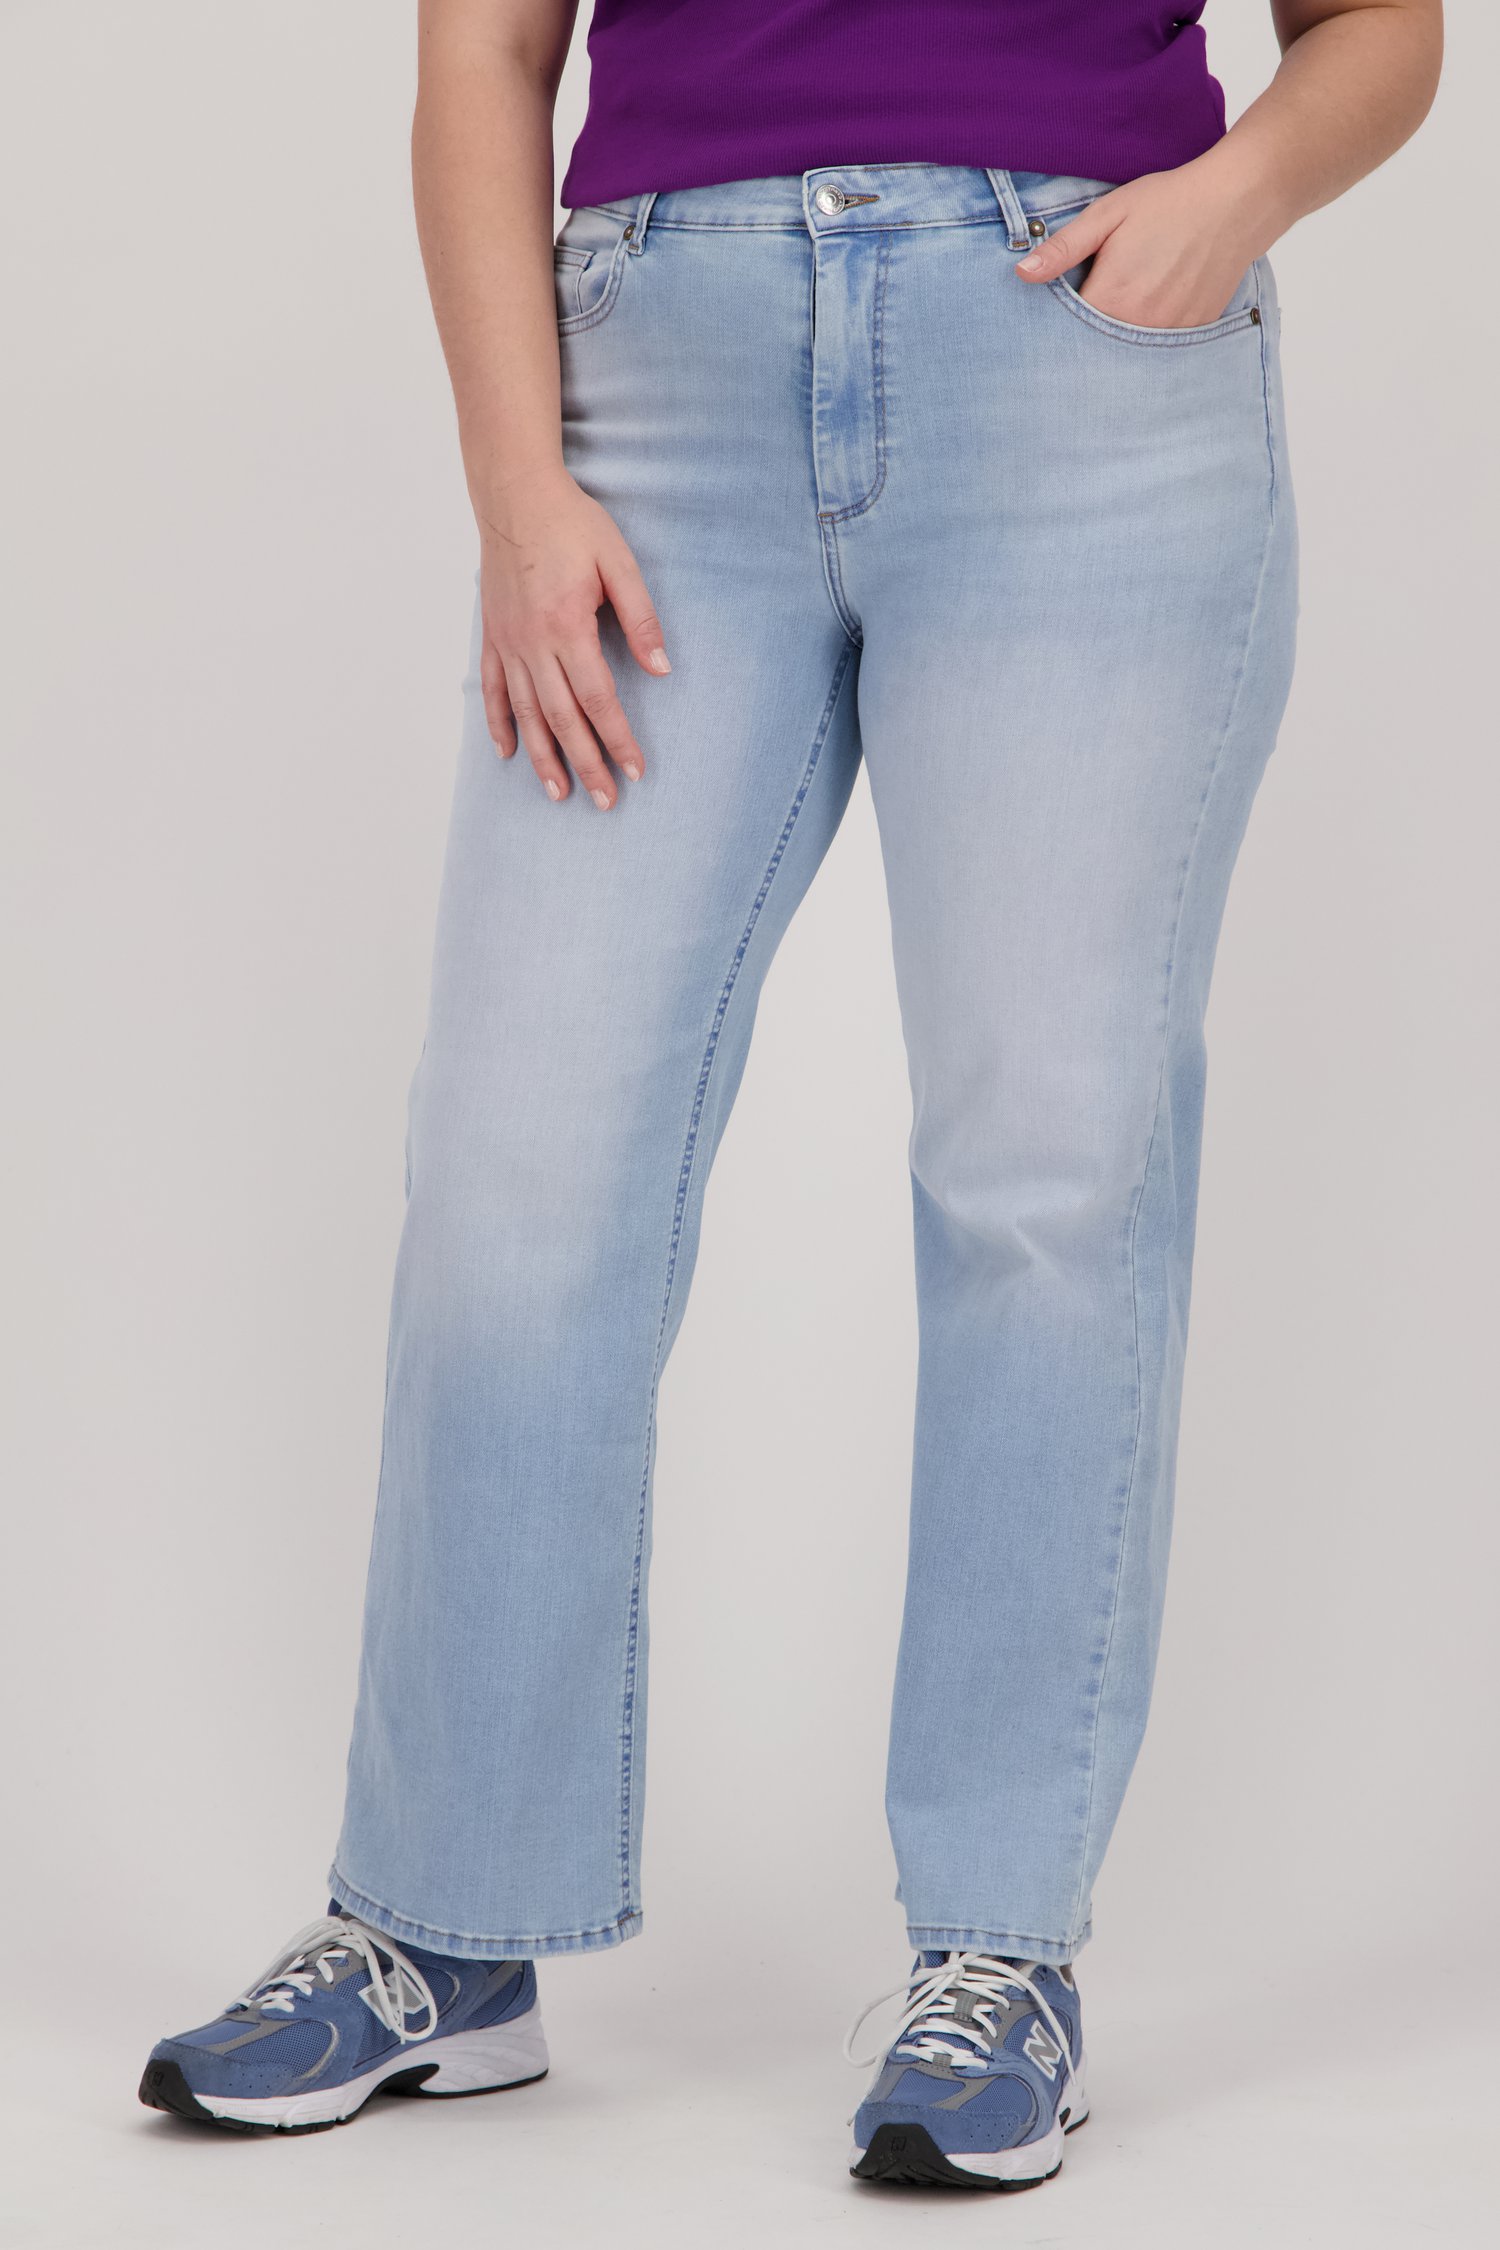 Wijde lichtblauwe jeans van Only Carmakoma voor Dames